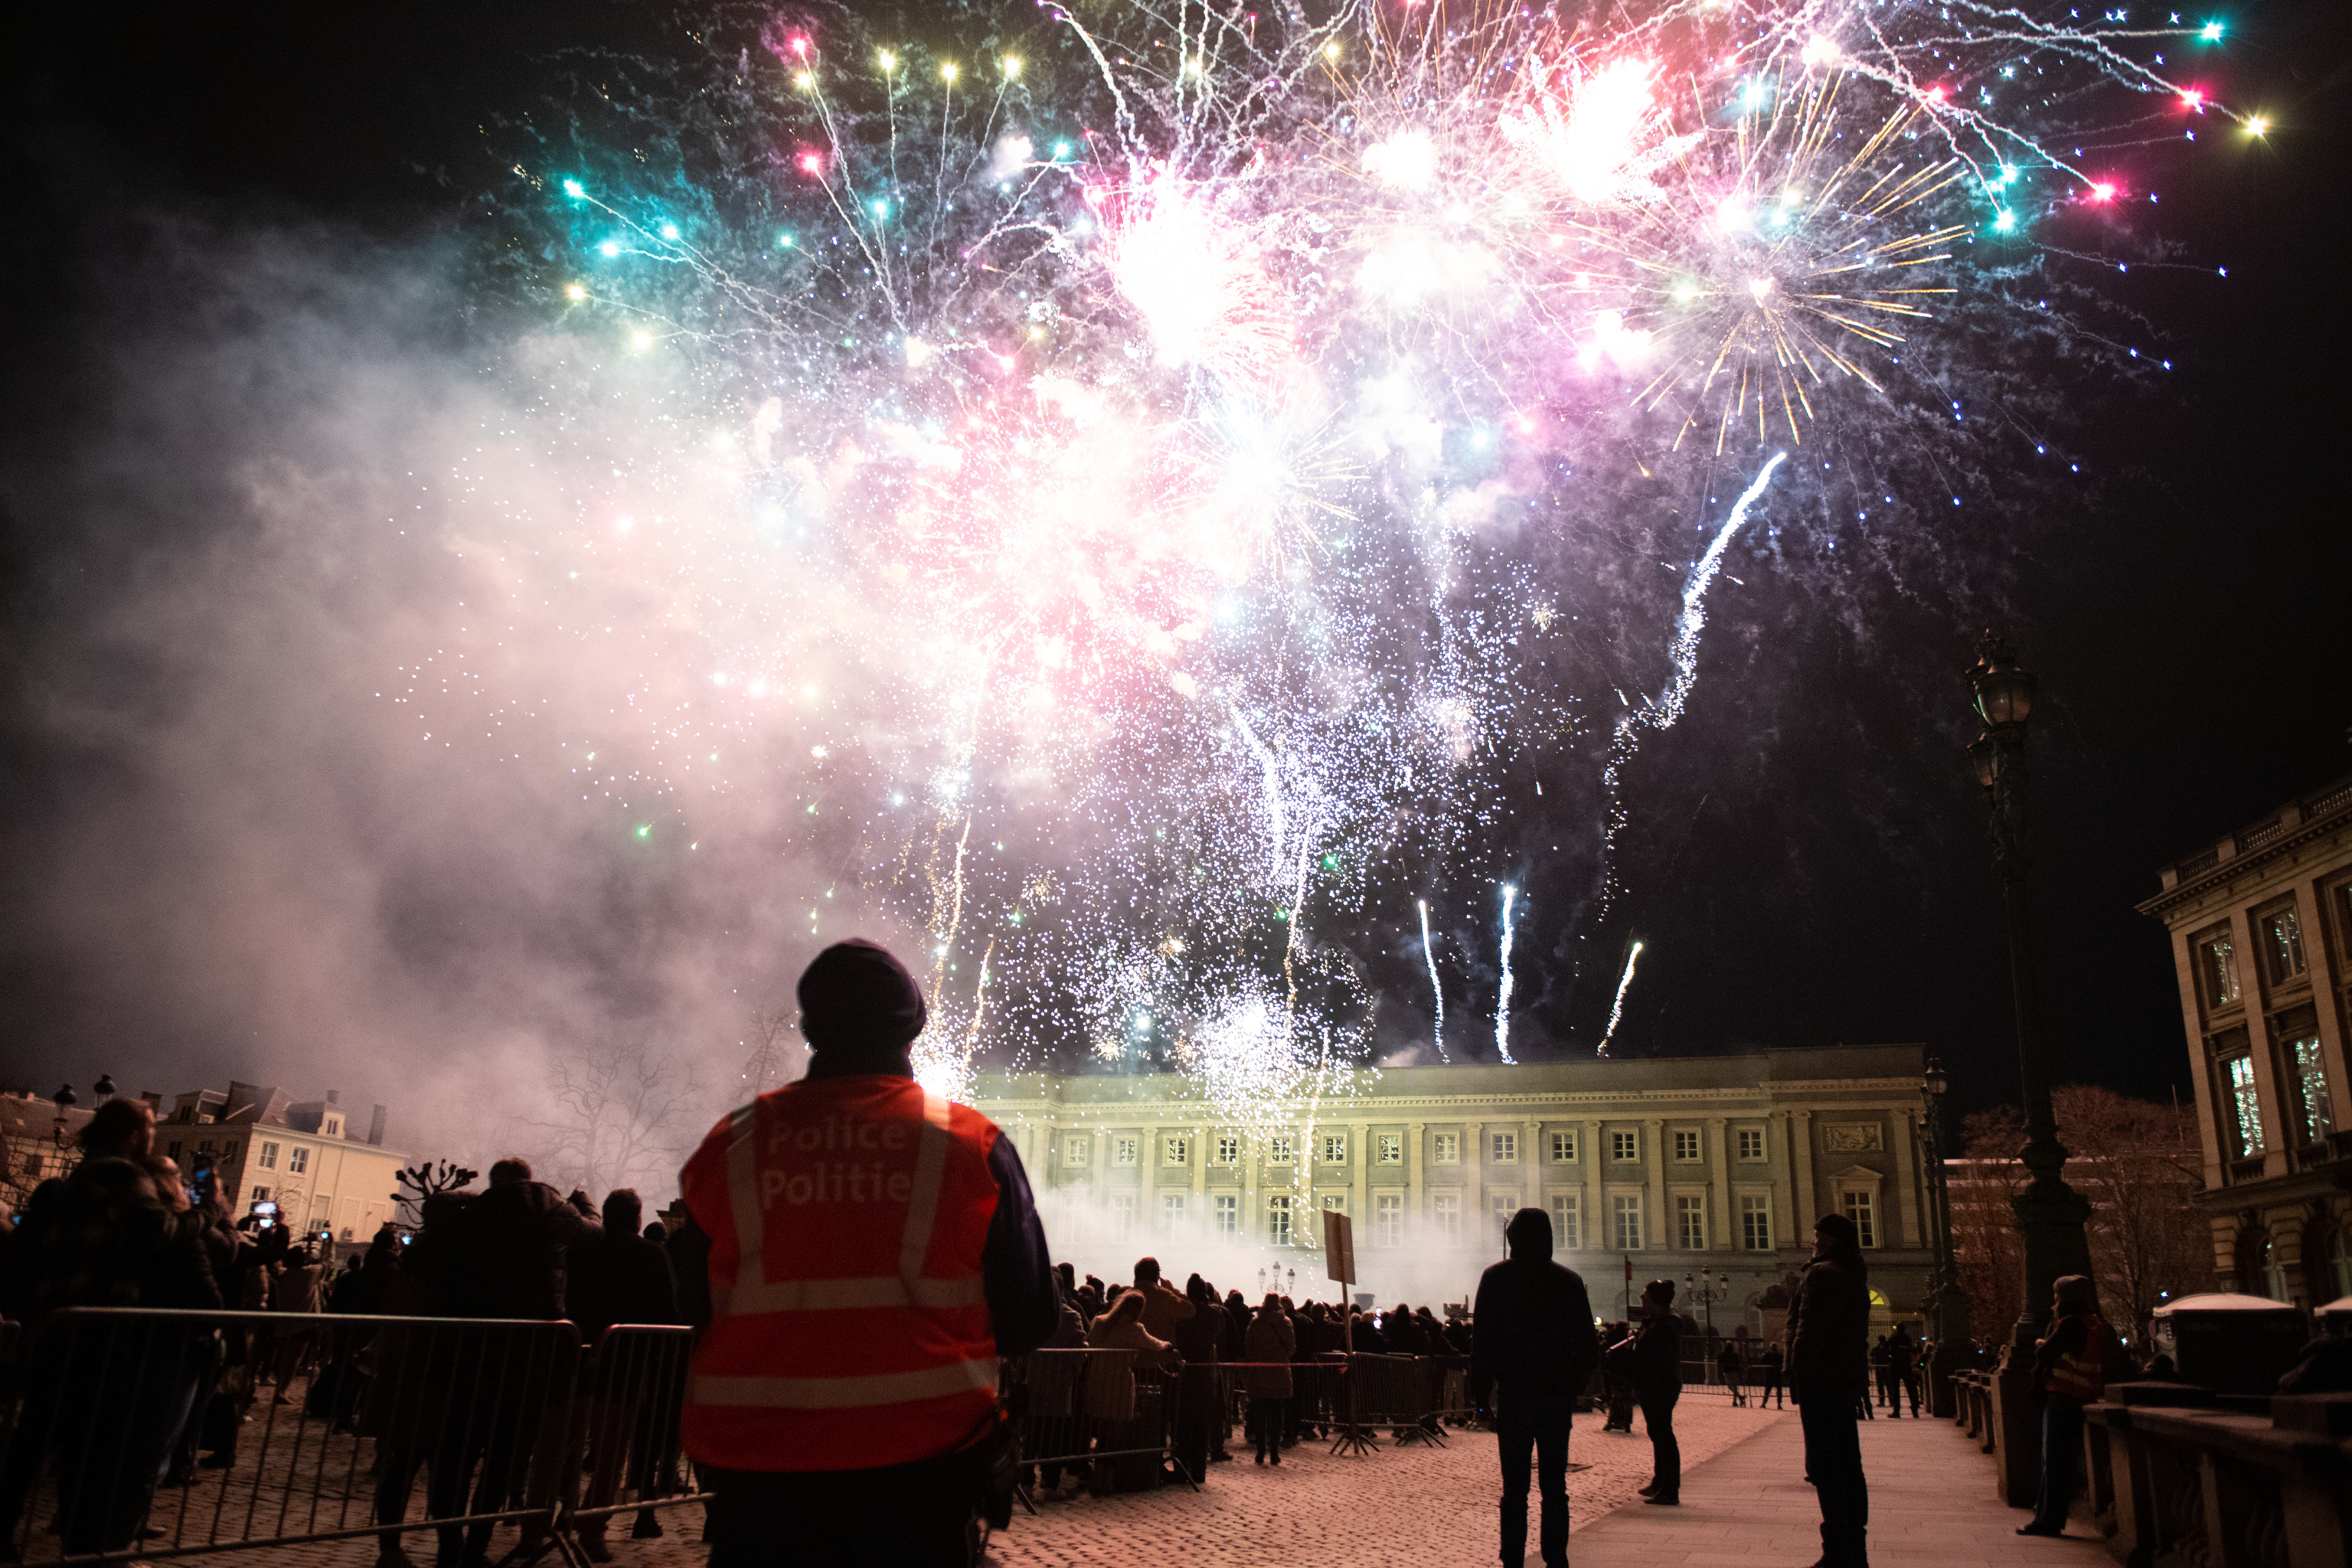 Réveillon du Nouvel An : les feux d'artifice interdits en Flandre orientale  - La Libre